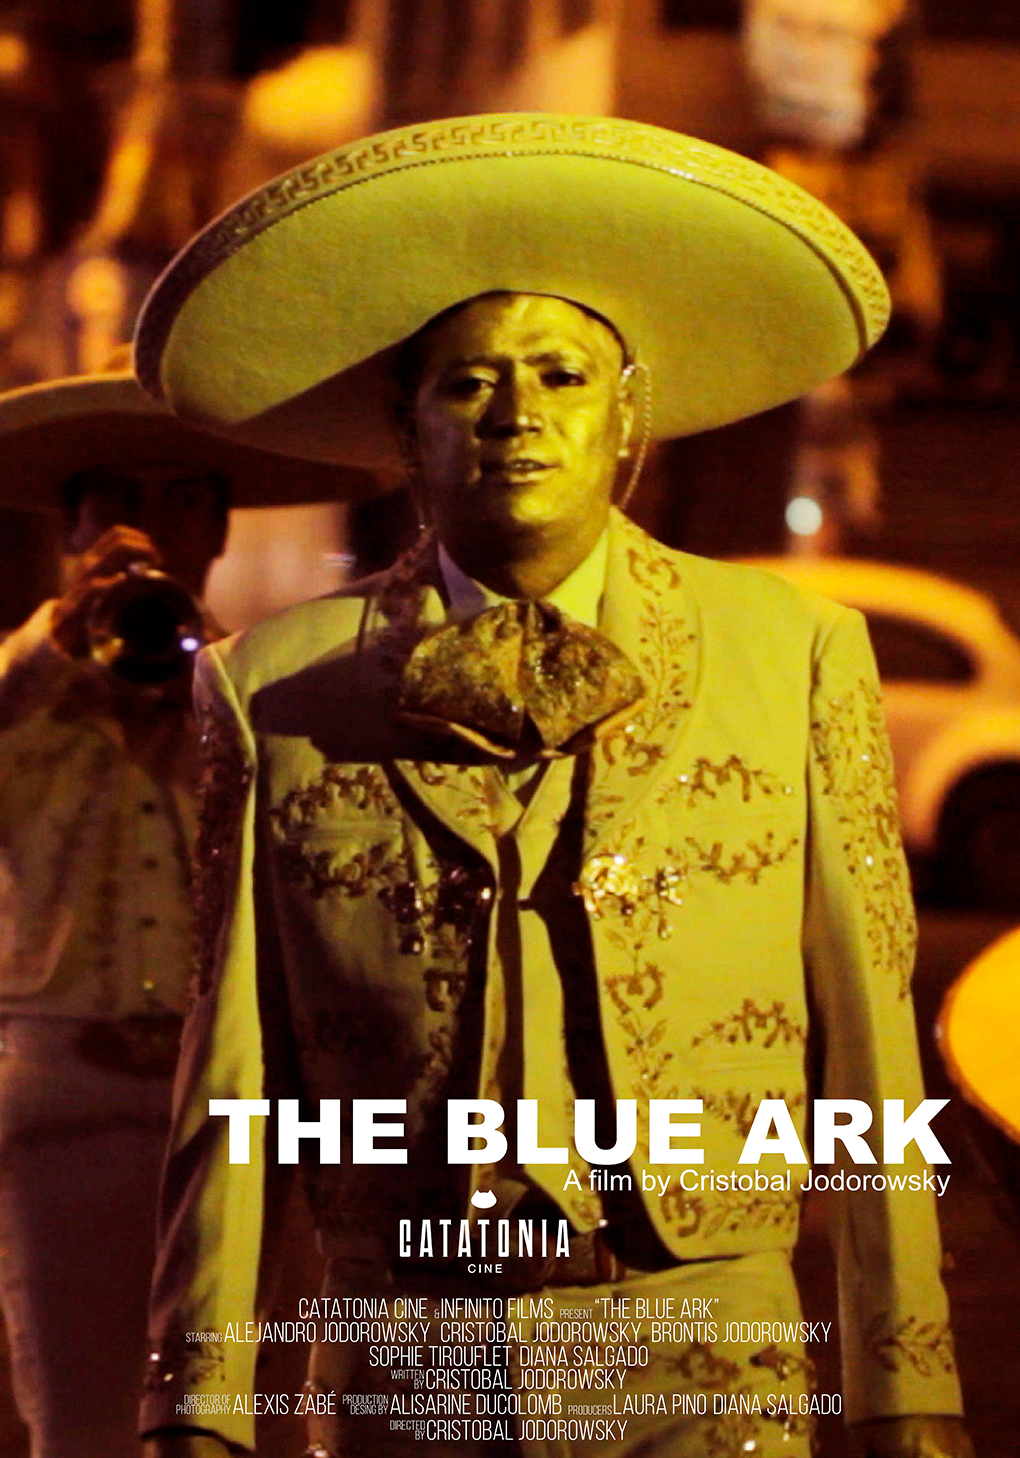 The blue ark